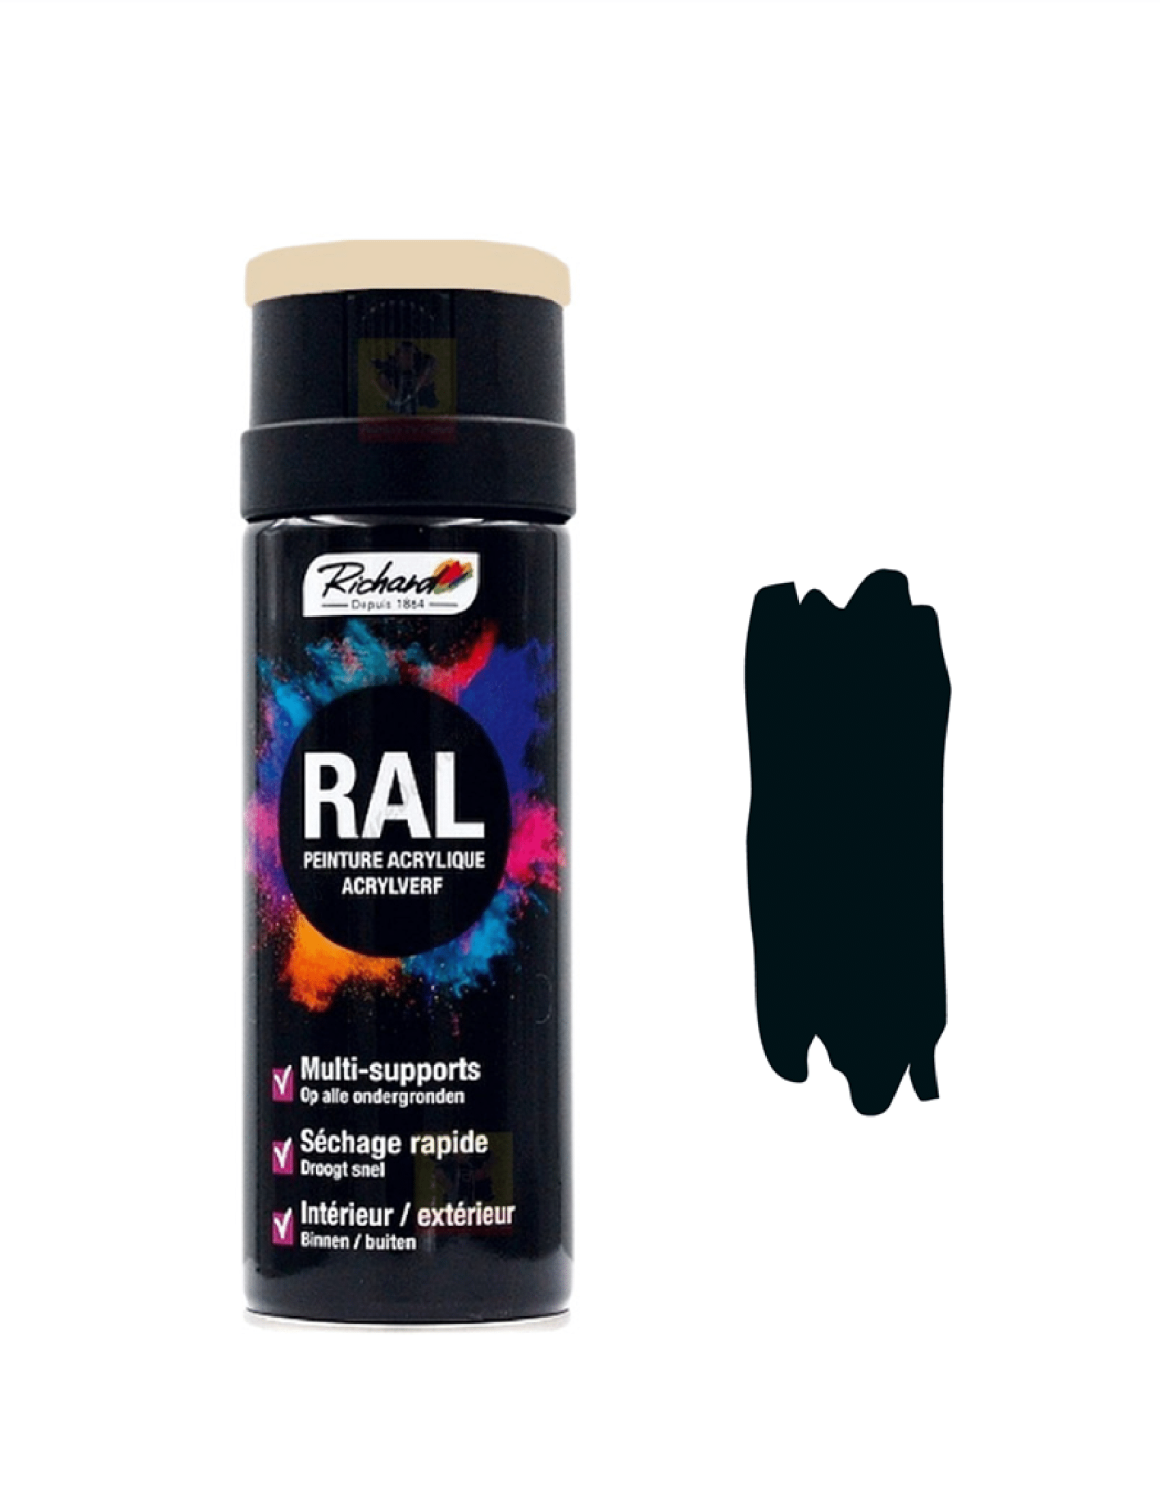 Bombe de peinture noire RAL 9005 - NOIR brillant - Hit Color 400ml